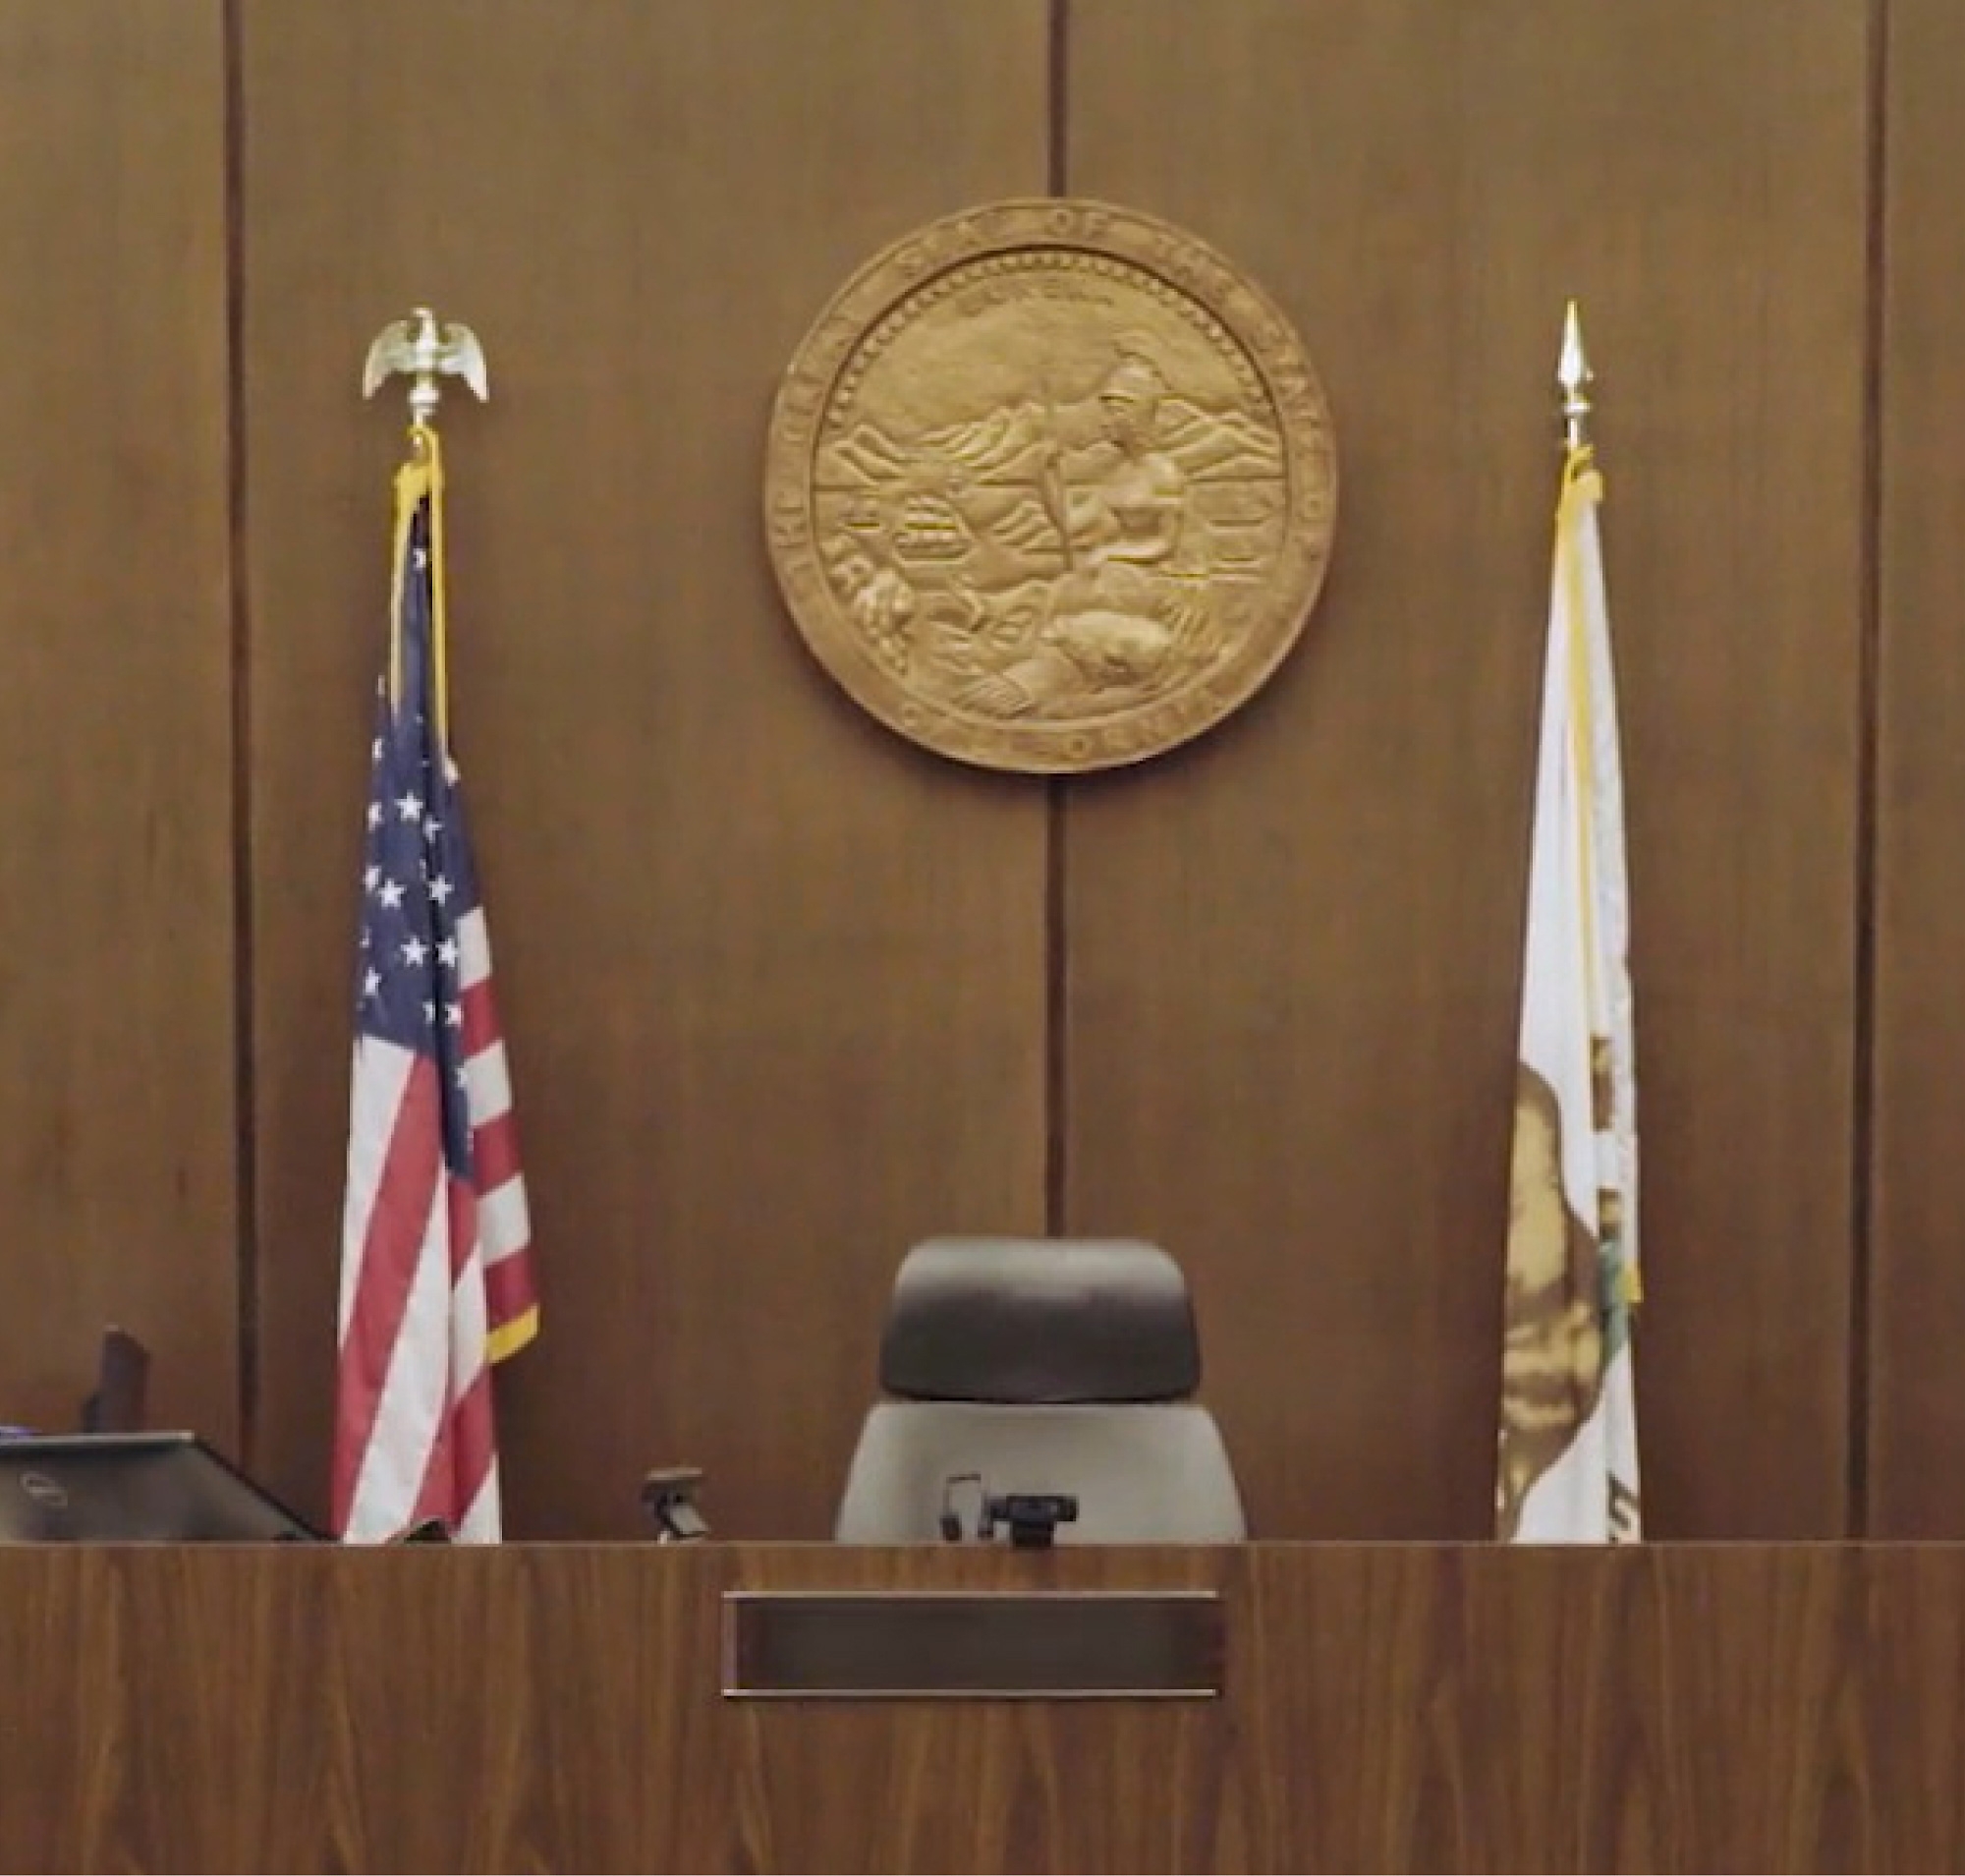 Tyhjä tuomarin tuoli oikeussalissa, jonka seinällä on osavaltion vaakuna Yhdysvaltojen ja osavaltioiden lippujen ympäröimänä.